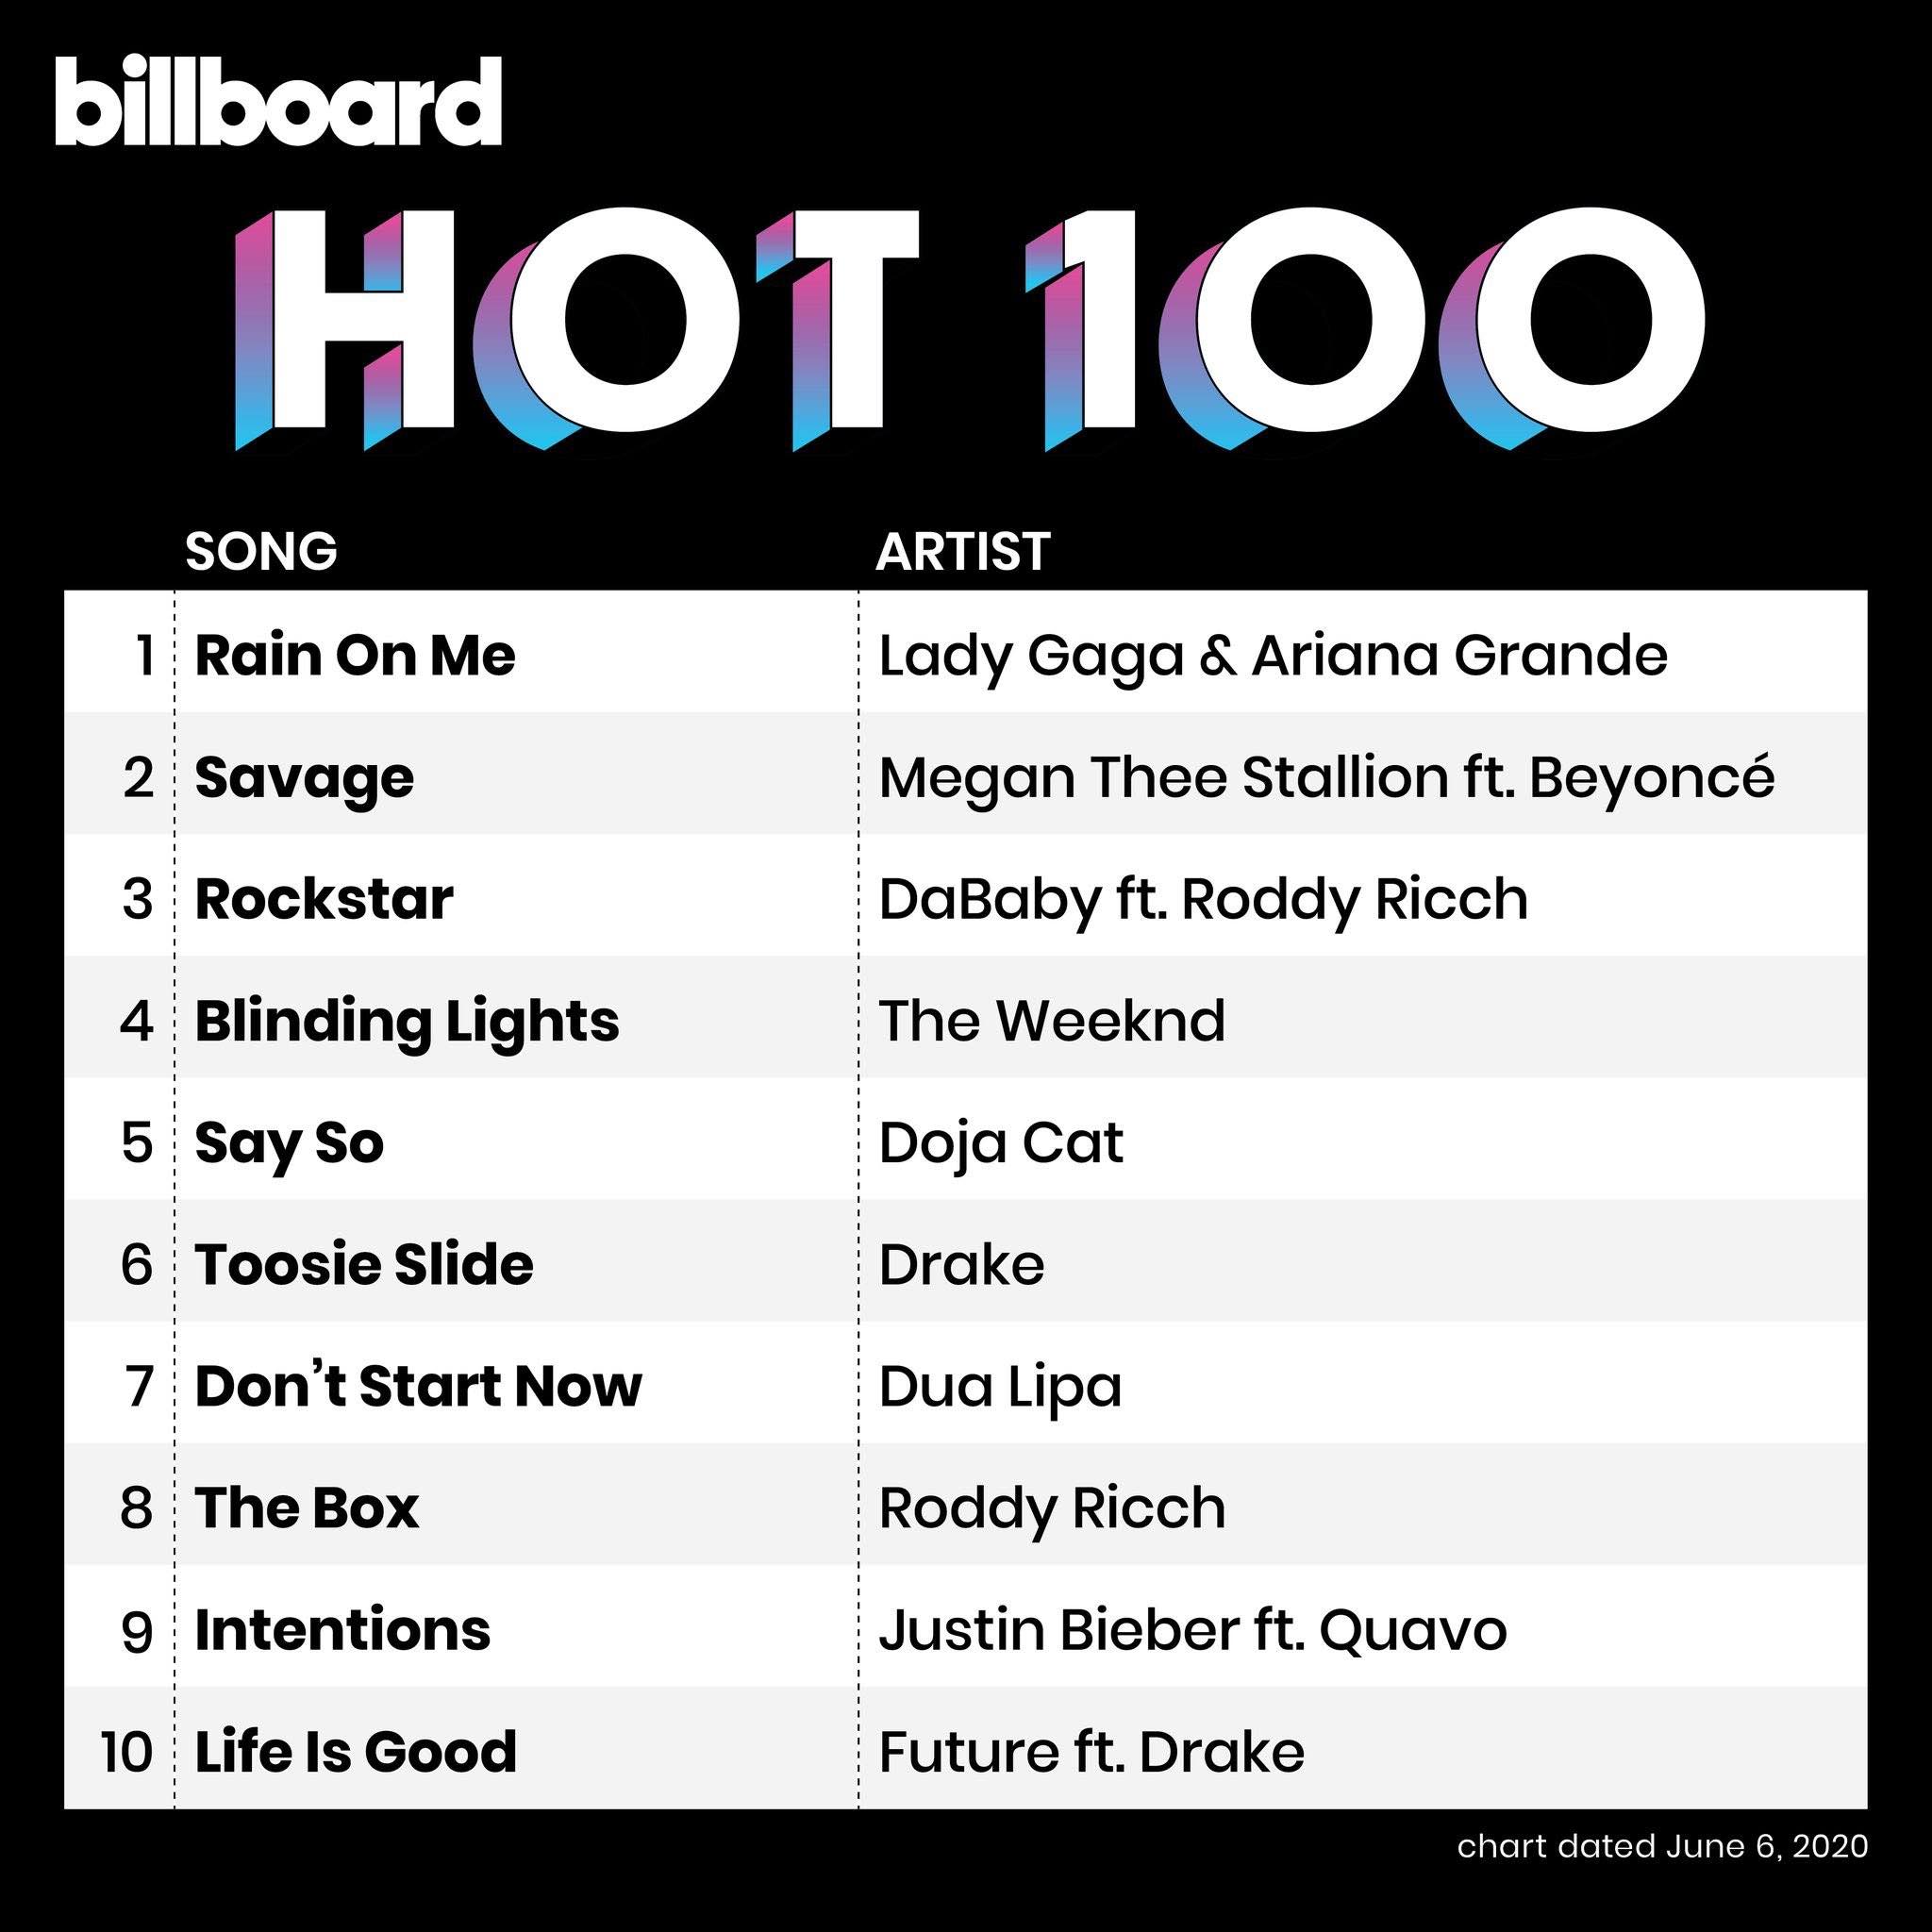 Lady Gaga - Chromatica - Hot 100 - Billboard